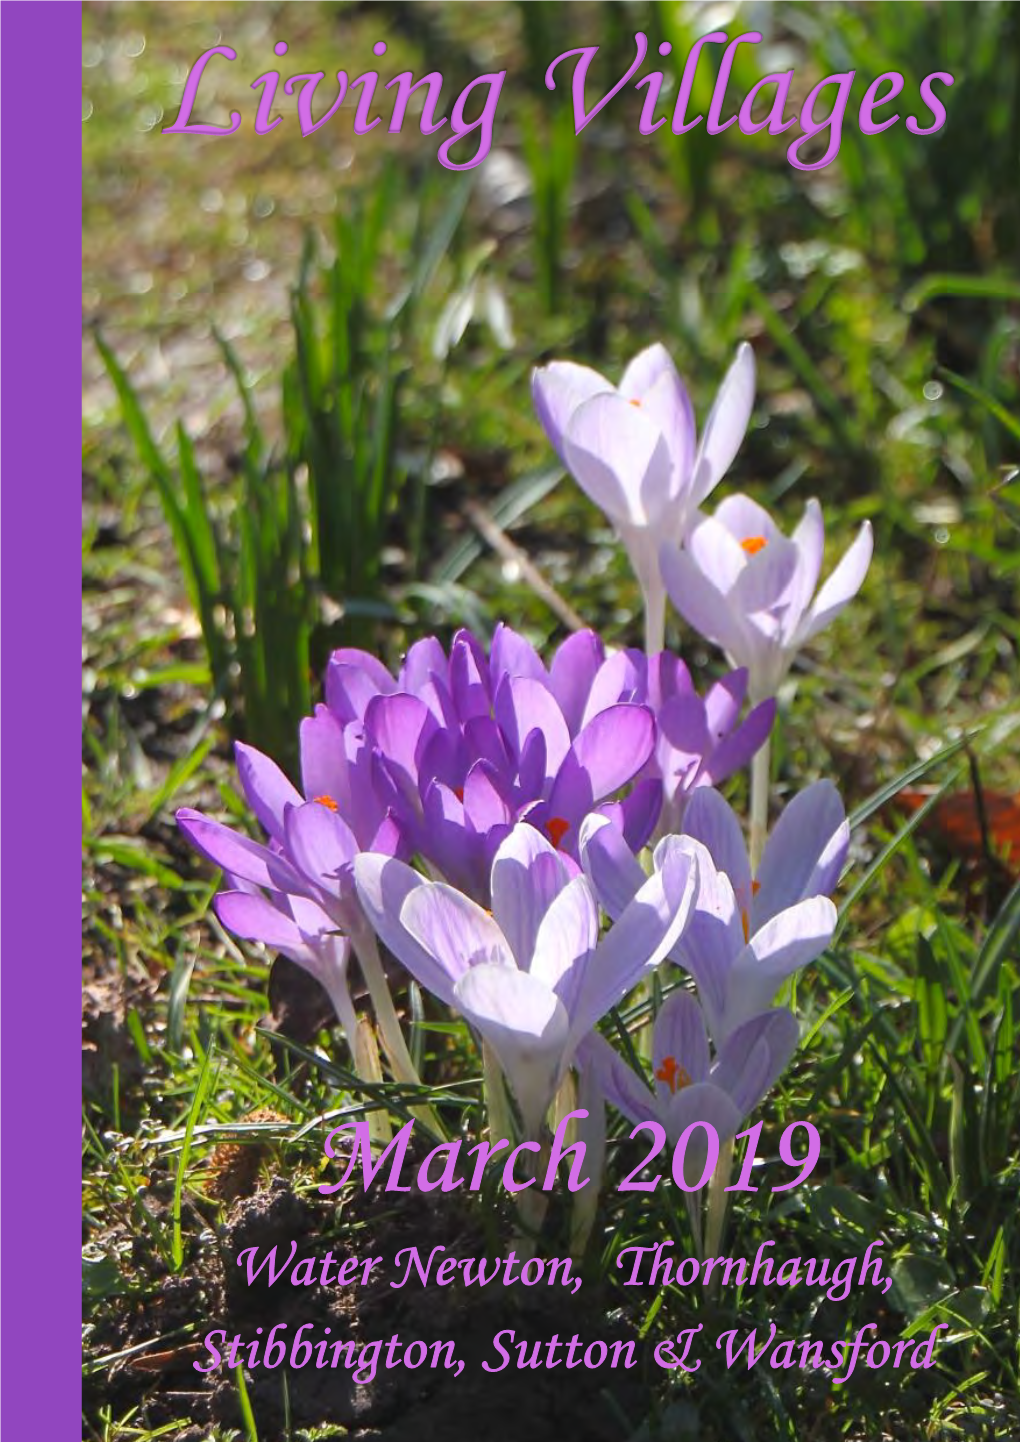 March 2019 Water Newton, Thornhaugh, Stibbington, Sutton & Wansford